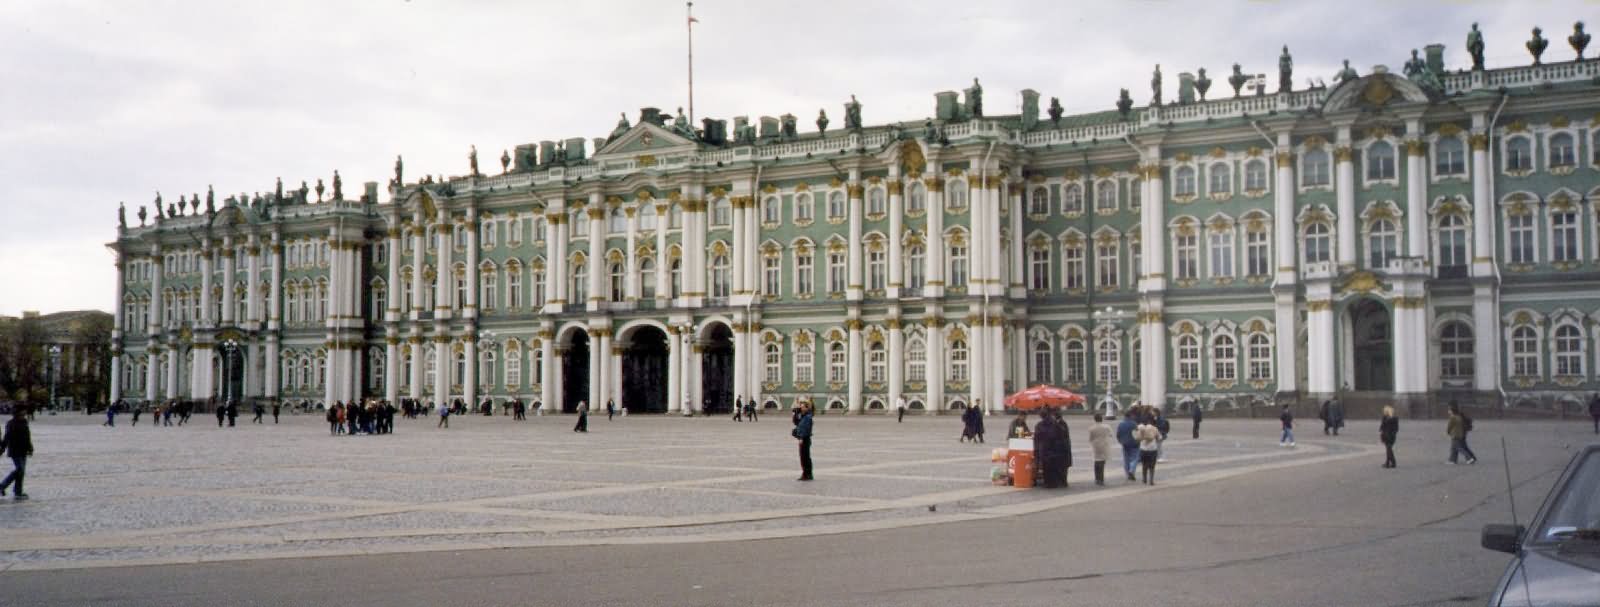 Side View Of Hermitage Museum In Saint Petersburg, Russia